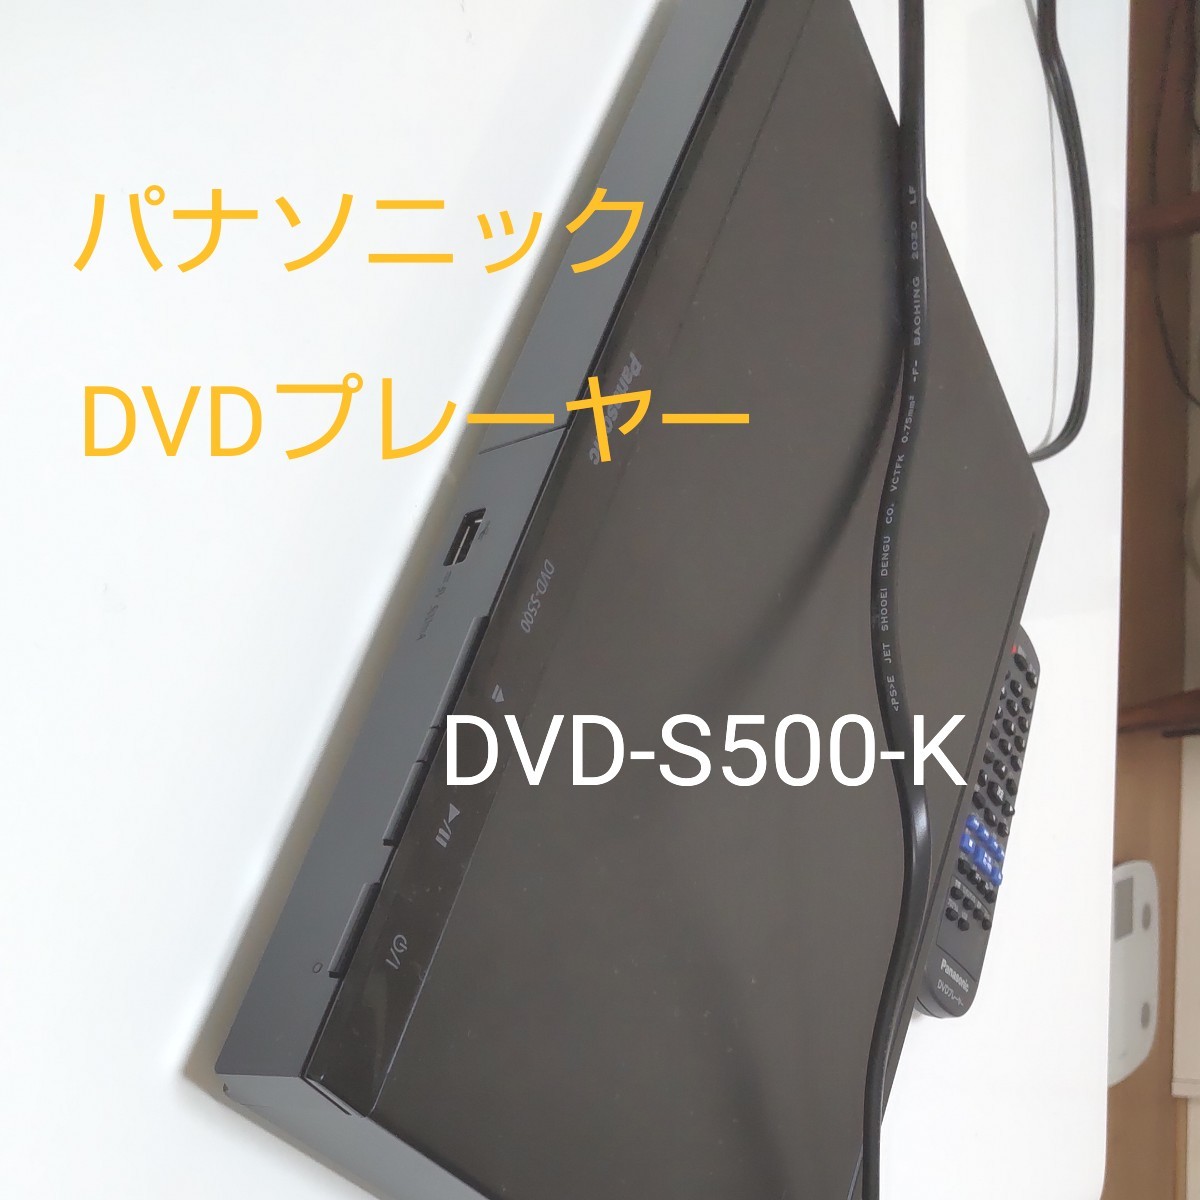 1717円 国内発送 パナソニック DVDプレーヤー DVD-S500-K